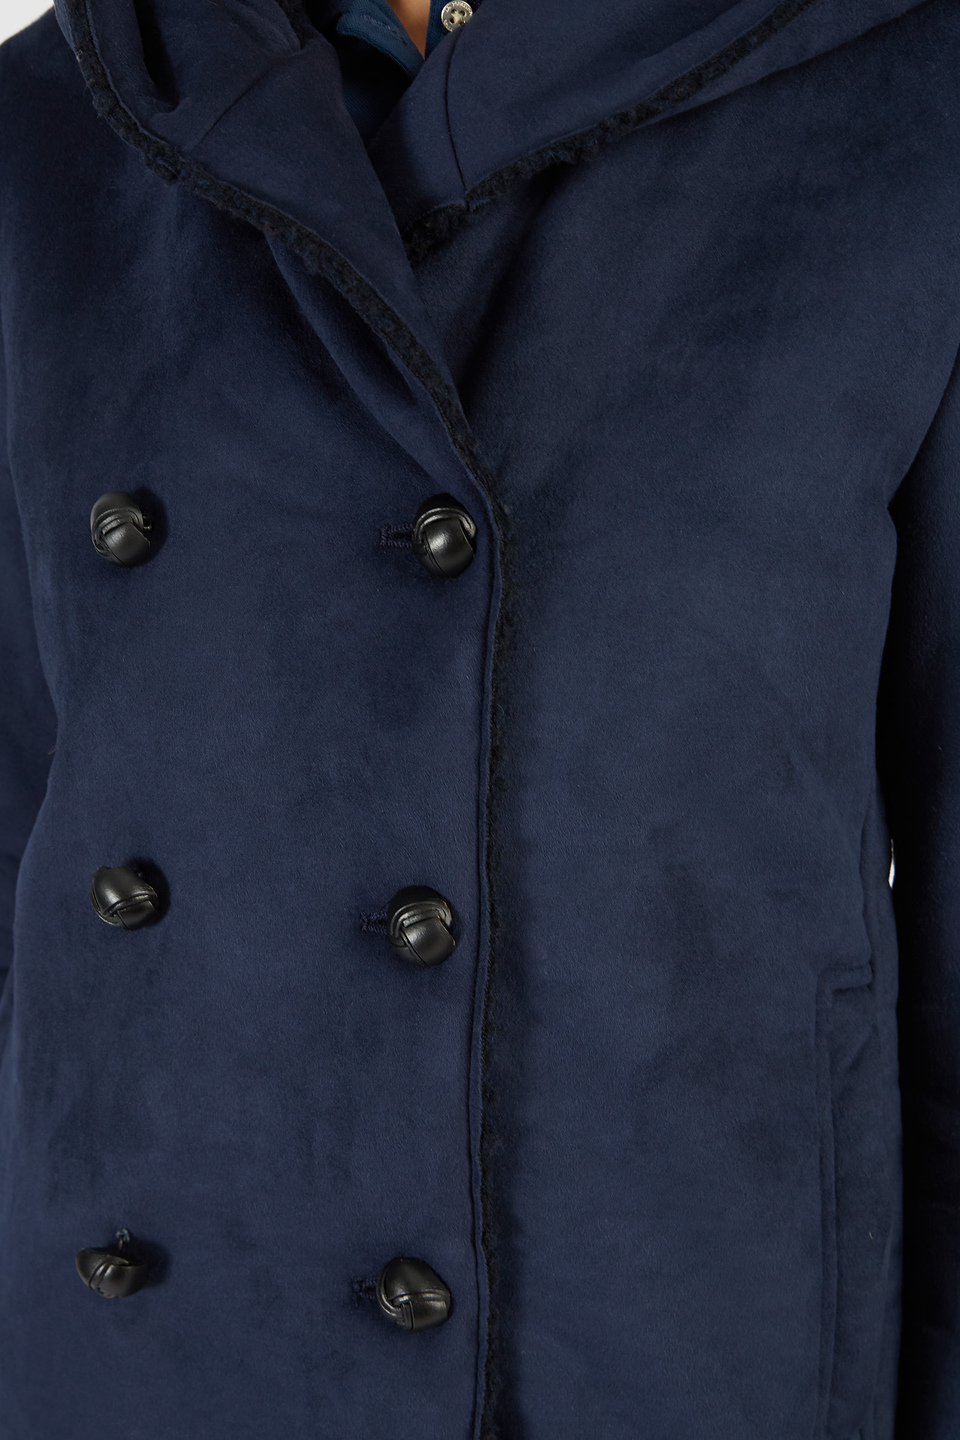 Damen-Jacke mit Samteffekt und Knöpfen | La Martina - Official Online Shop